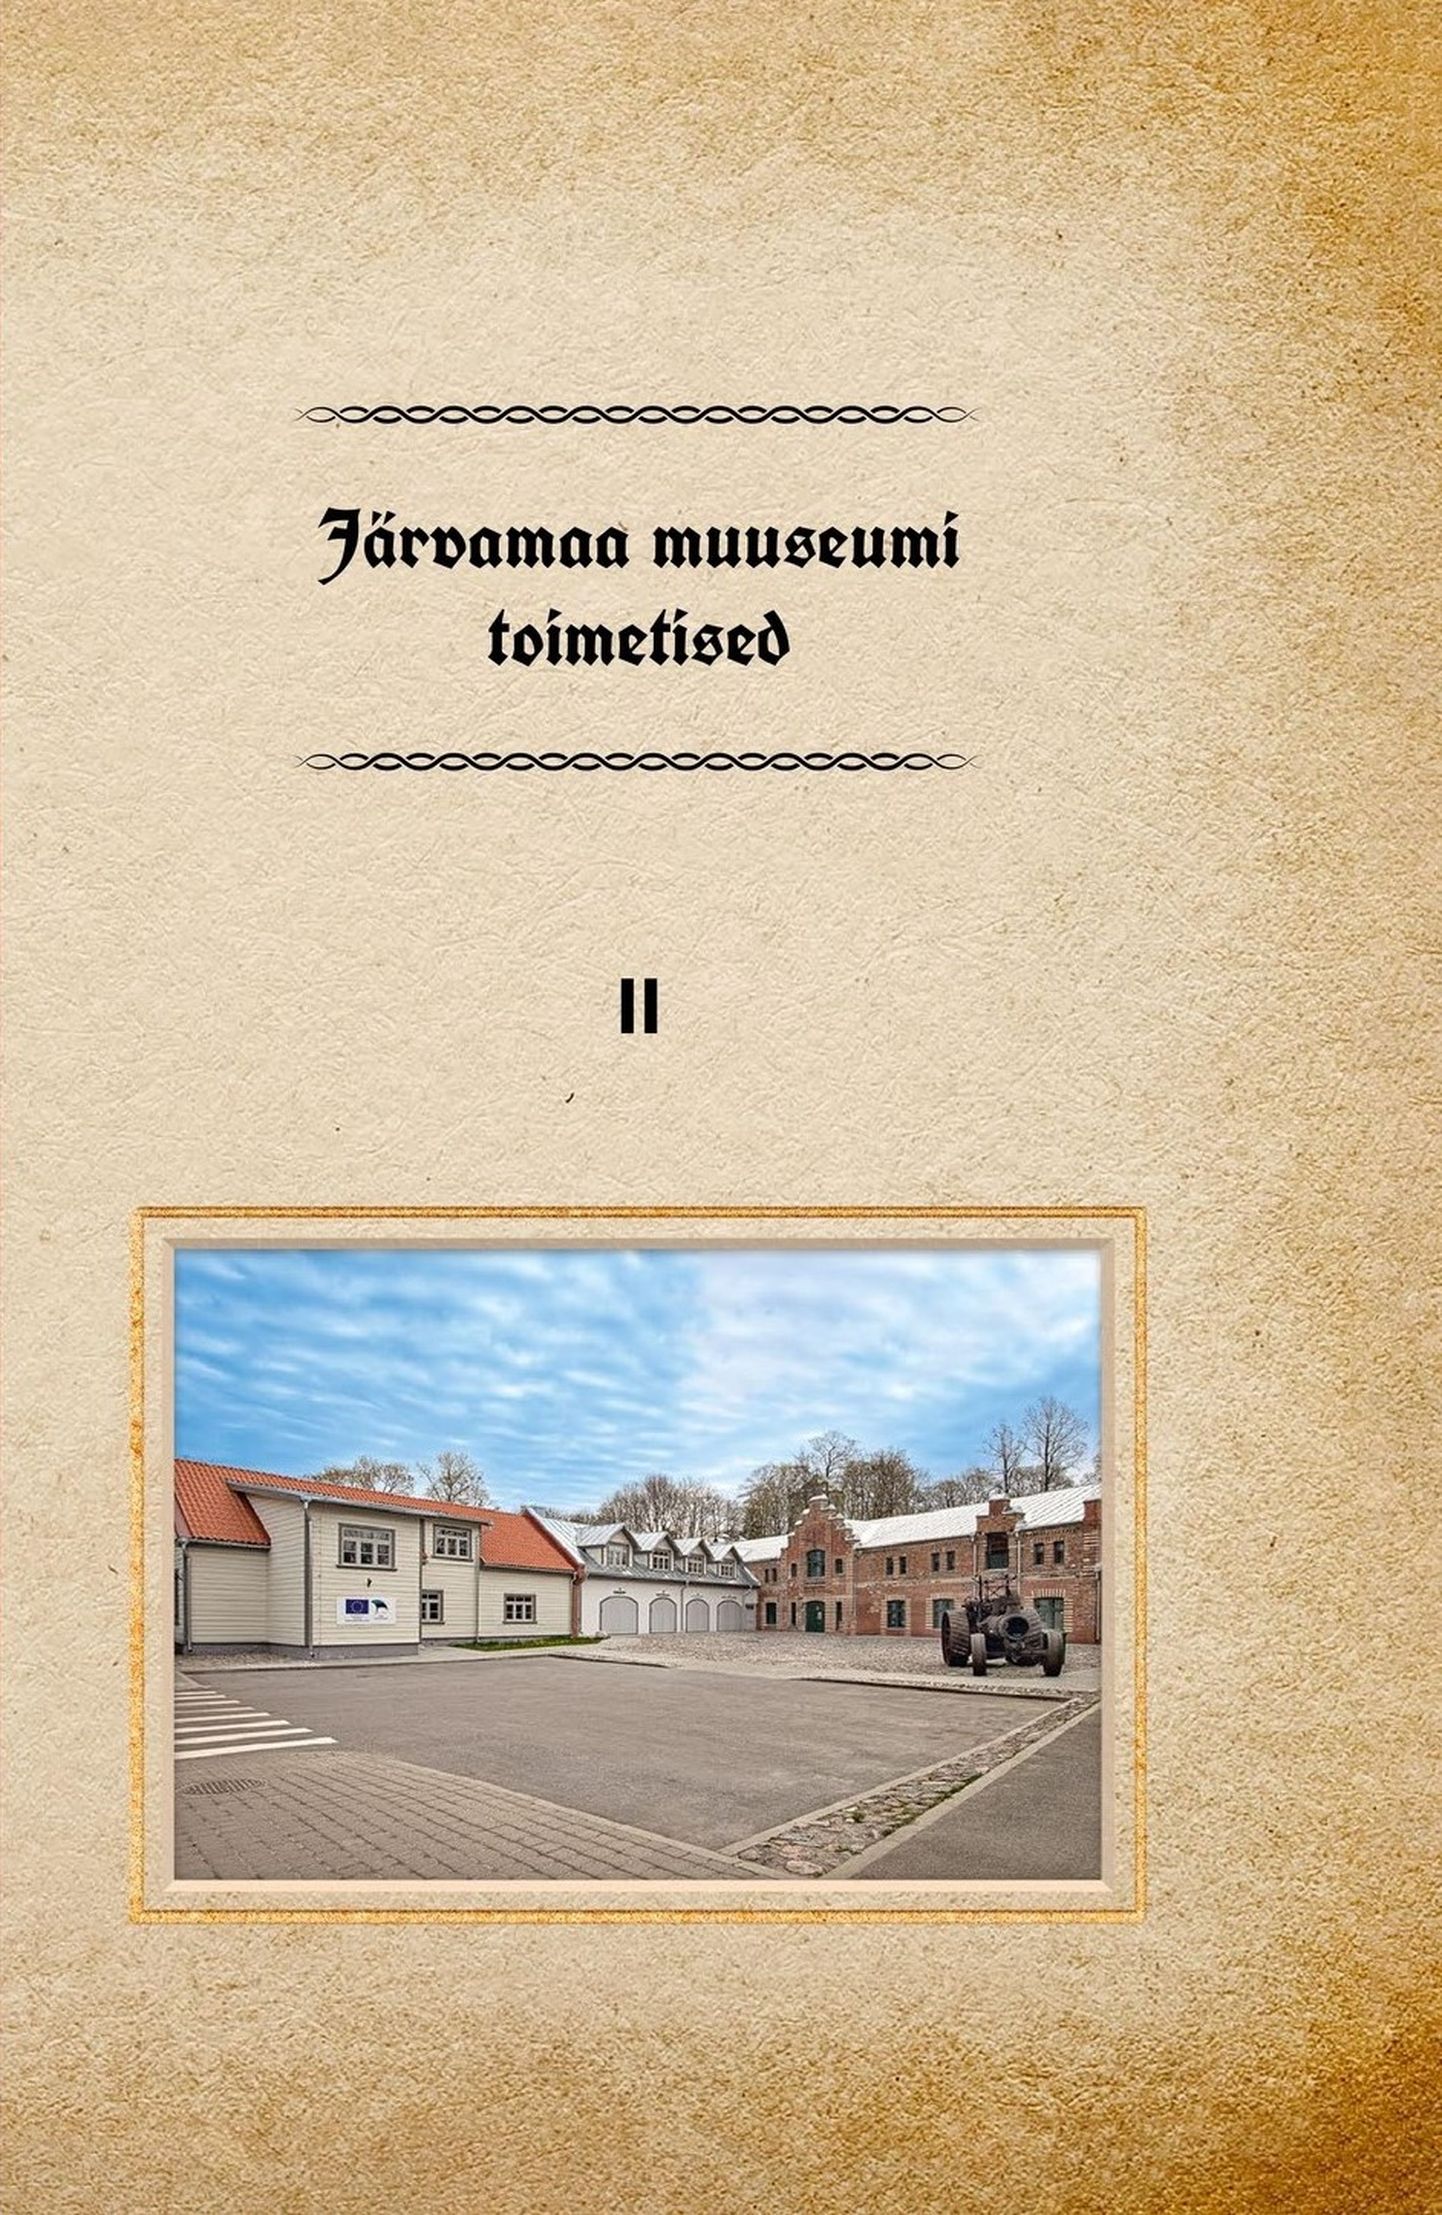 Raamatu "Järvamaa muuseumi toimetised II" esikaas.